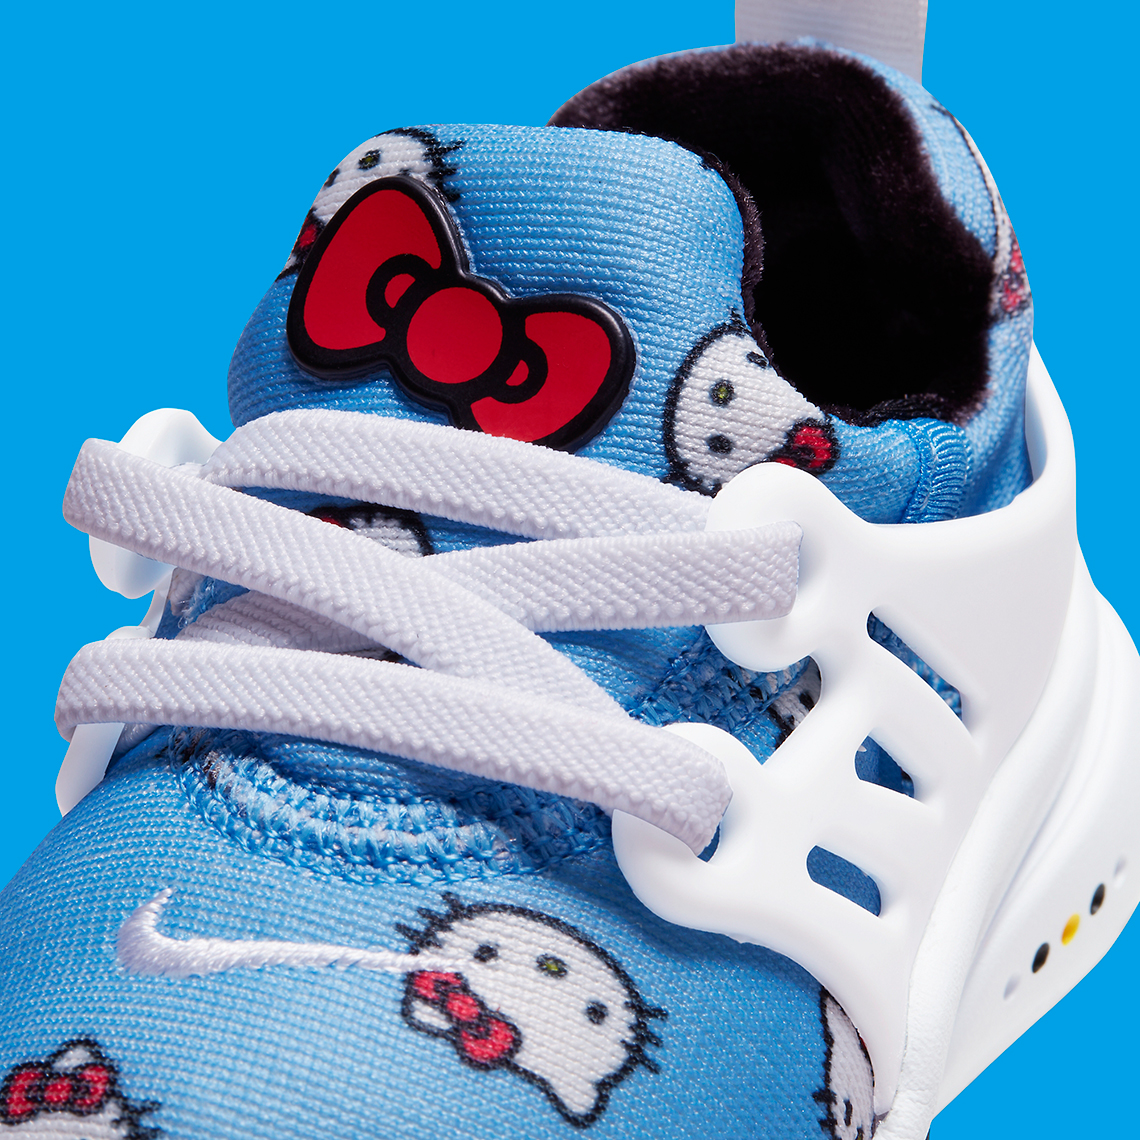 Nike Air Presto Hello Kitty Toddler Td 7